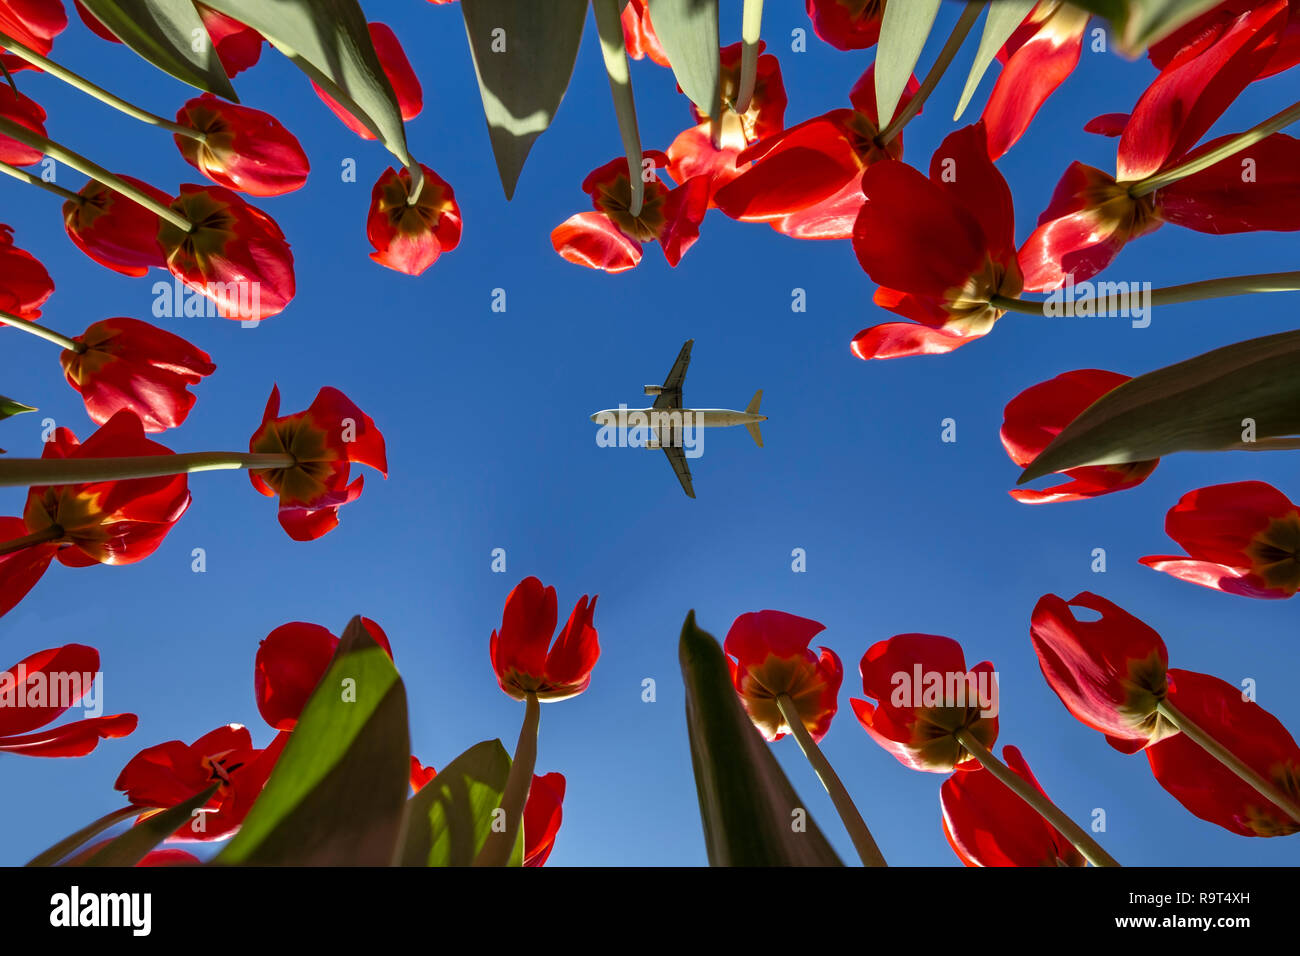 Flugzeug fliegen in der Mitte der konzentrischen Einstellung rote Tulpen zeigen auf einen blau leuchtenden Frühling Himmel ohne Wolken Stockfoto